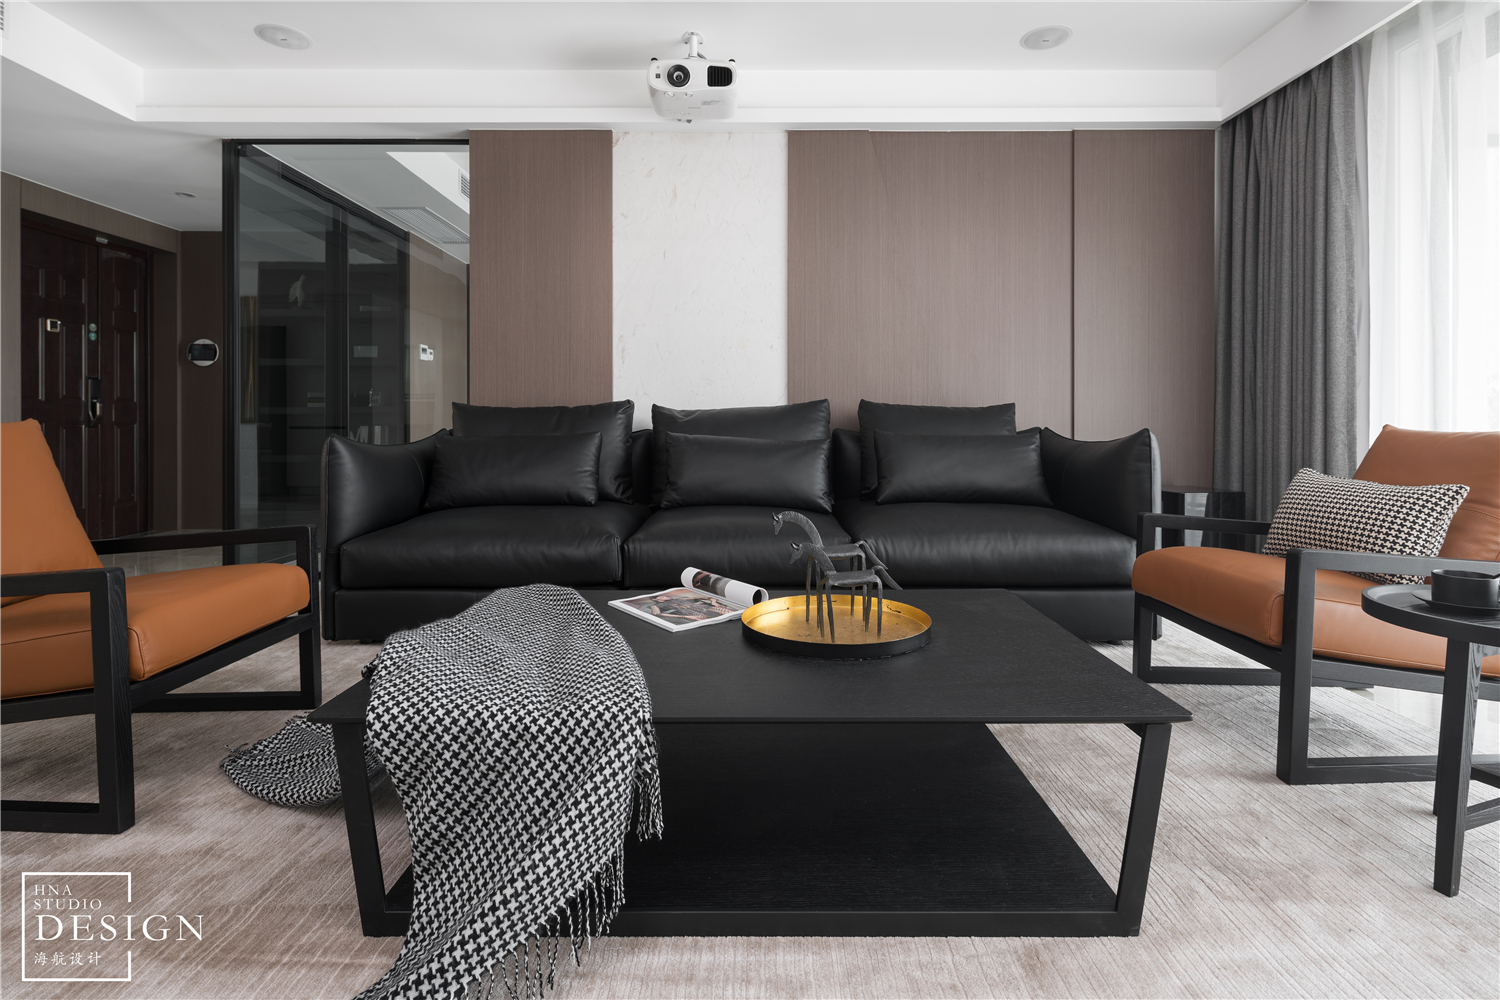 客厅沙发2装修效果图时尚现代风客厅沙发图片现代简约客厅设计图片赏析